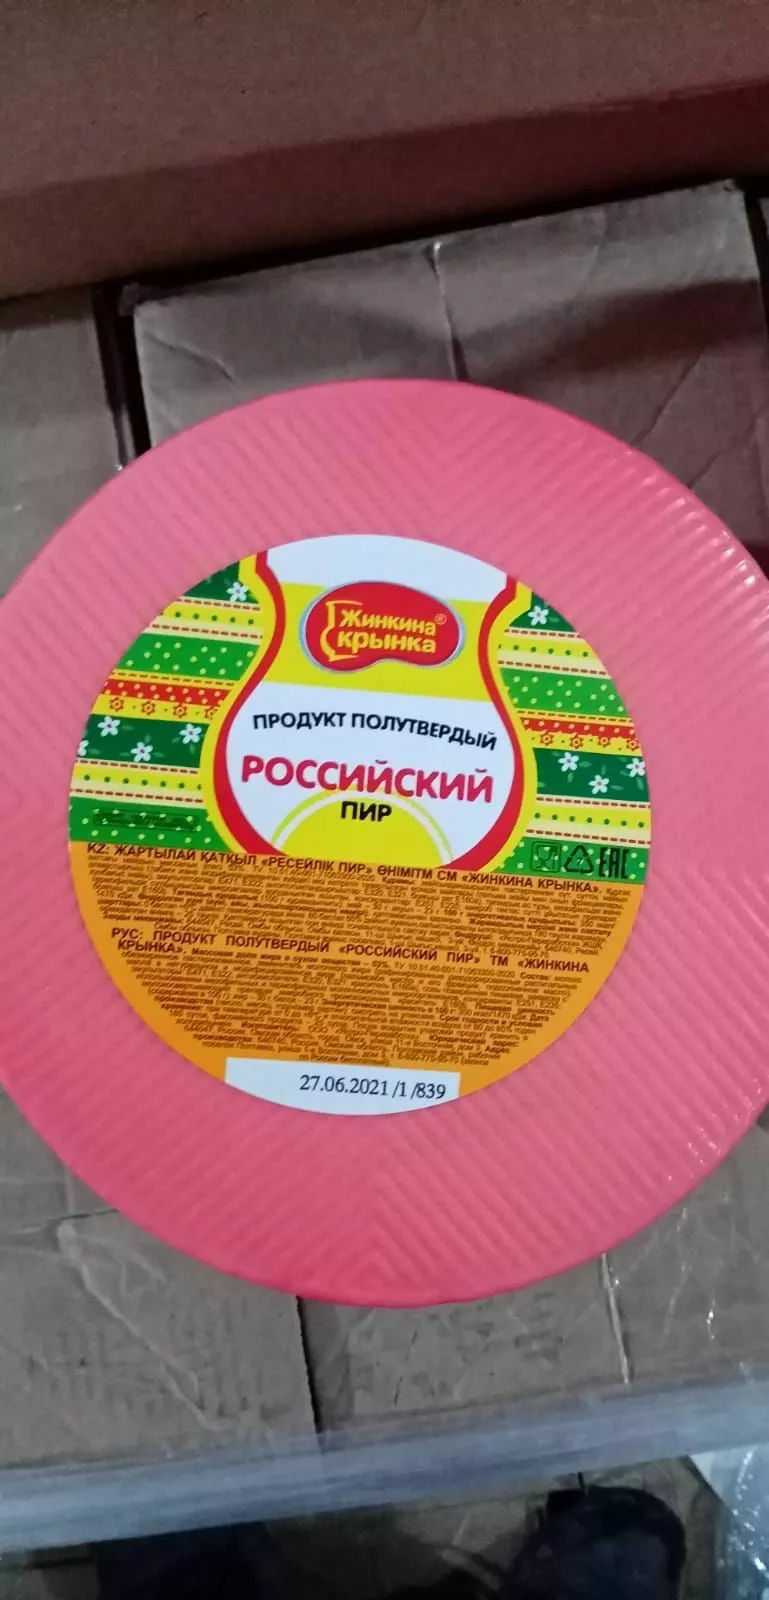 сырный продукт в Москве 18